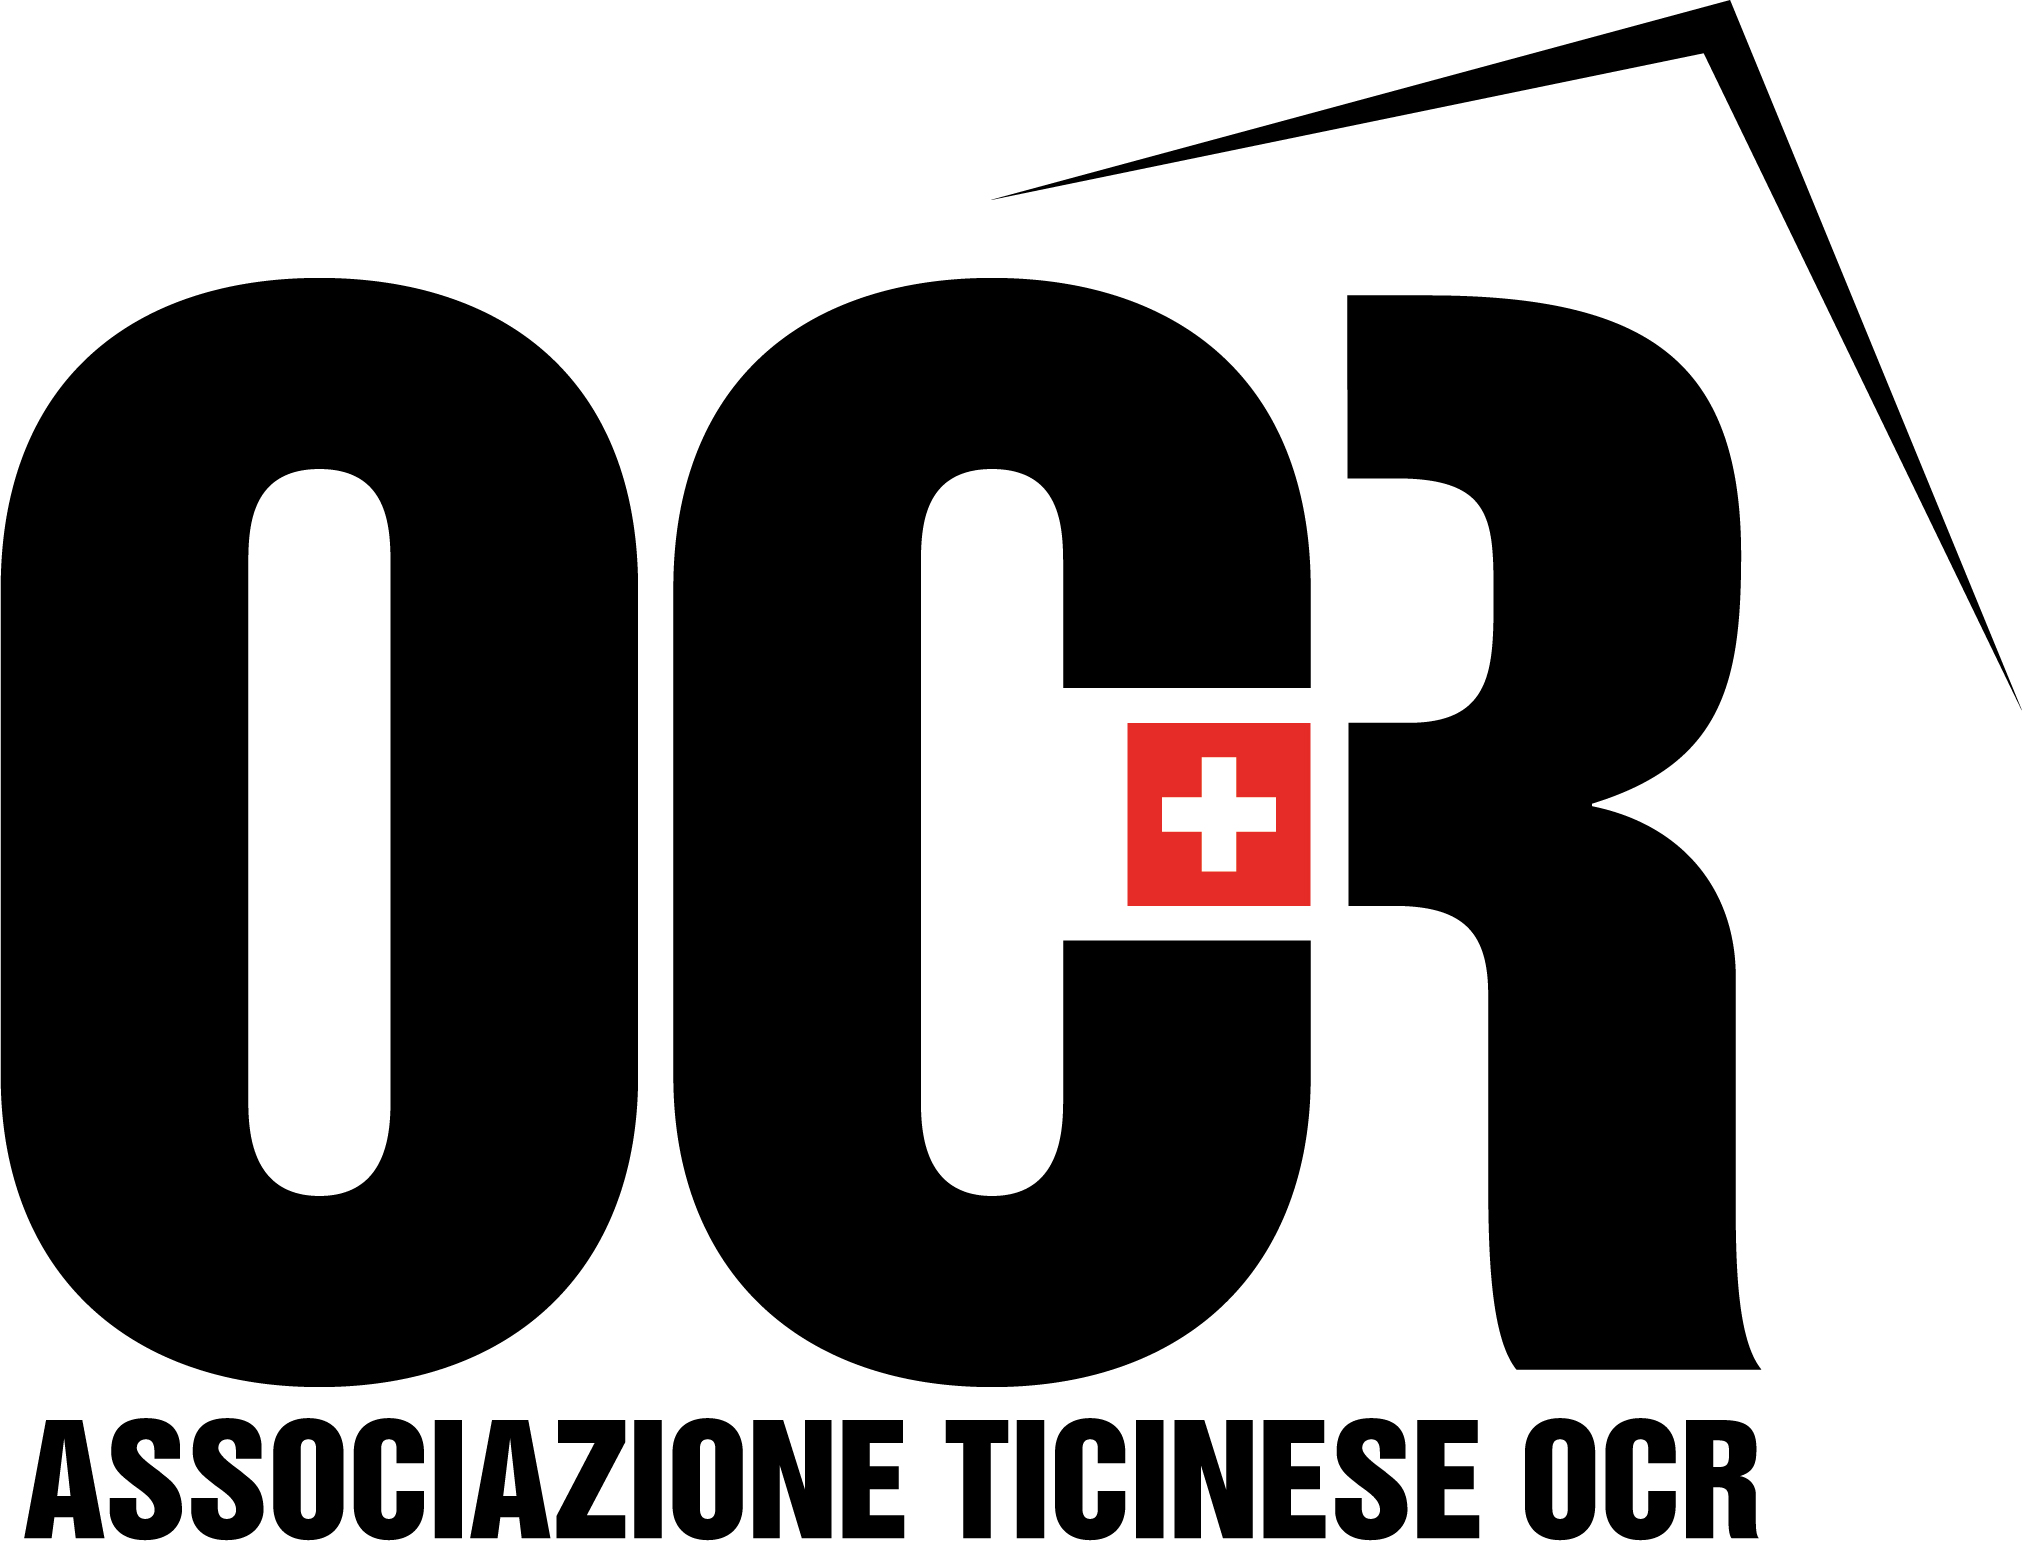 associazione-ticinese-ocr-richiesta-di-affiliazione-in-corso-logo.png